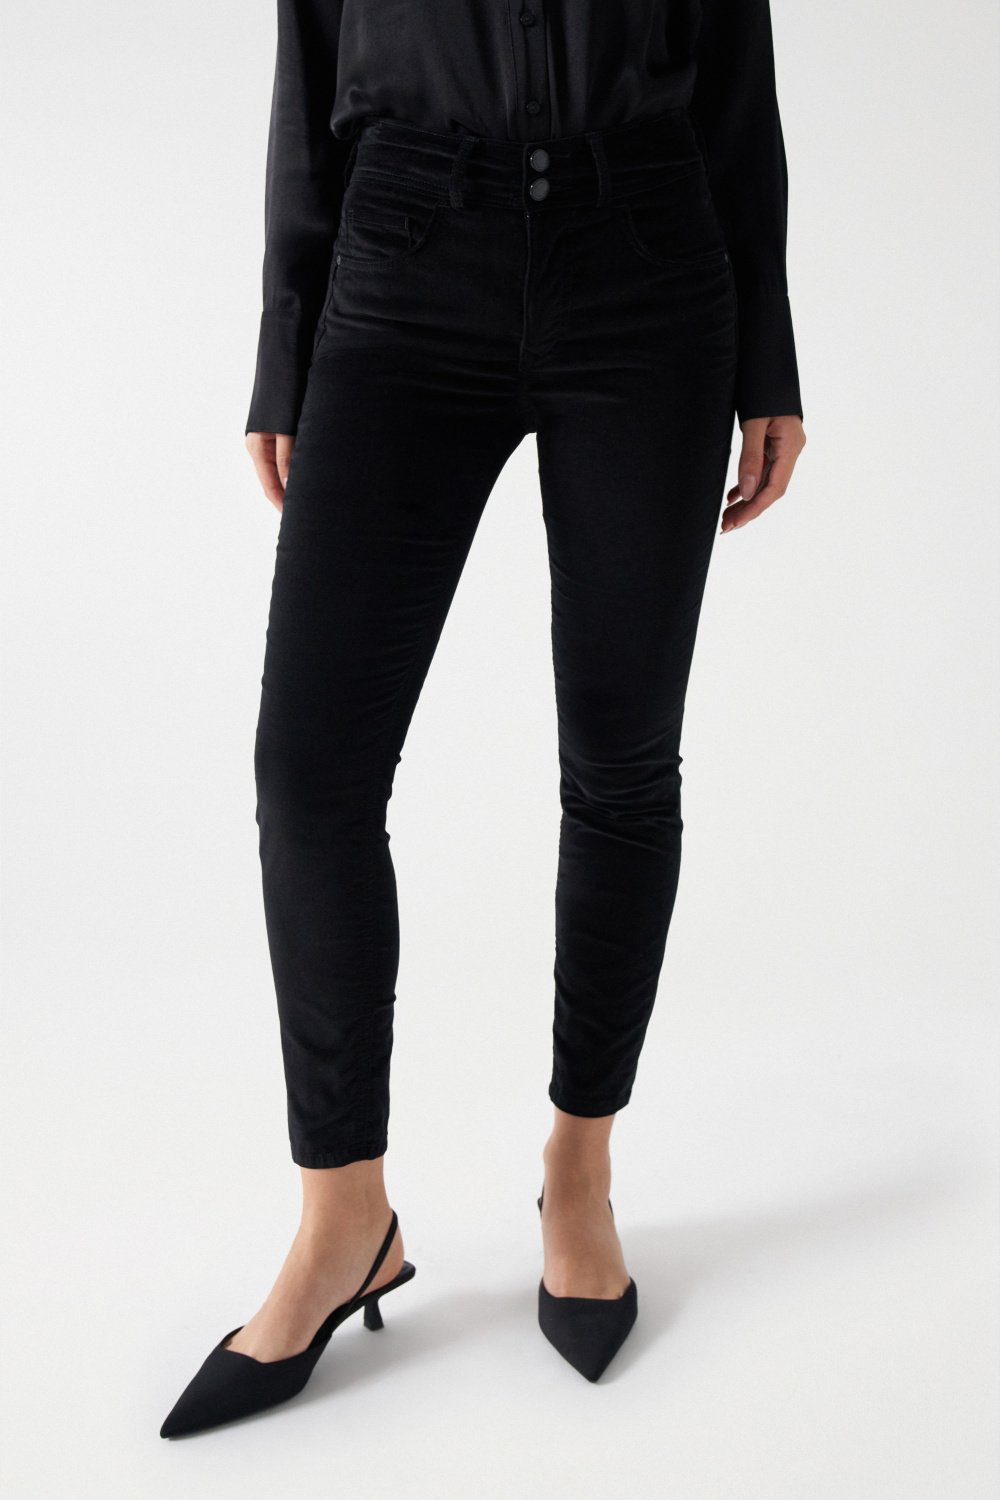 Women's Black Jeans, Black Velvet Jeans